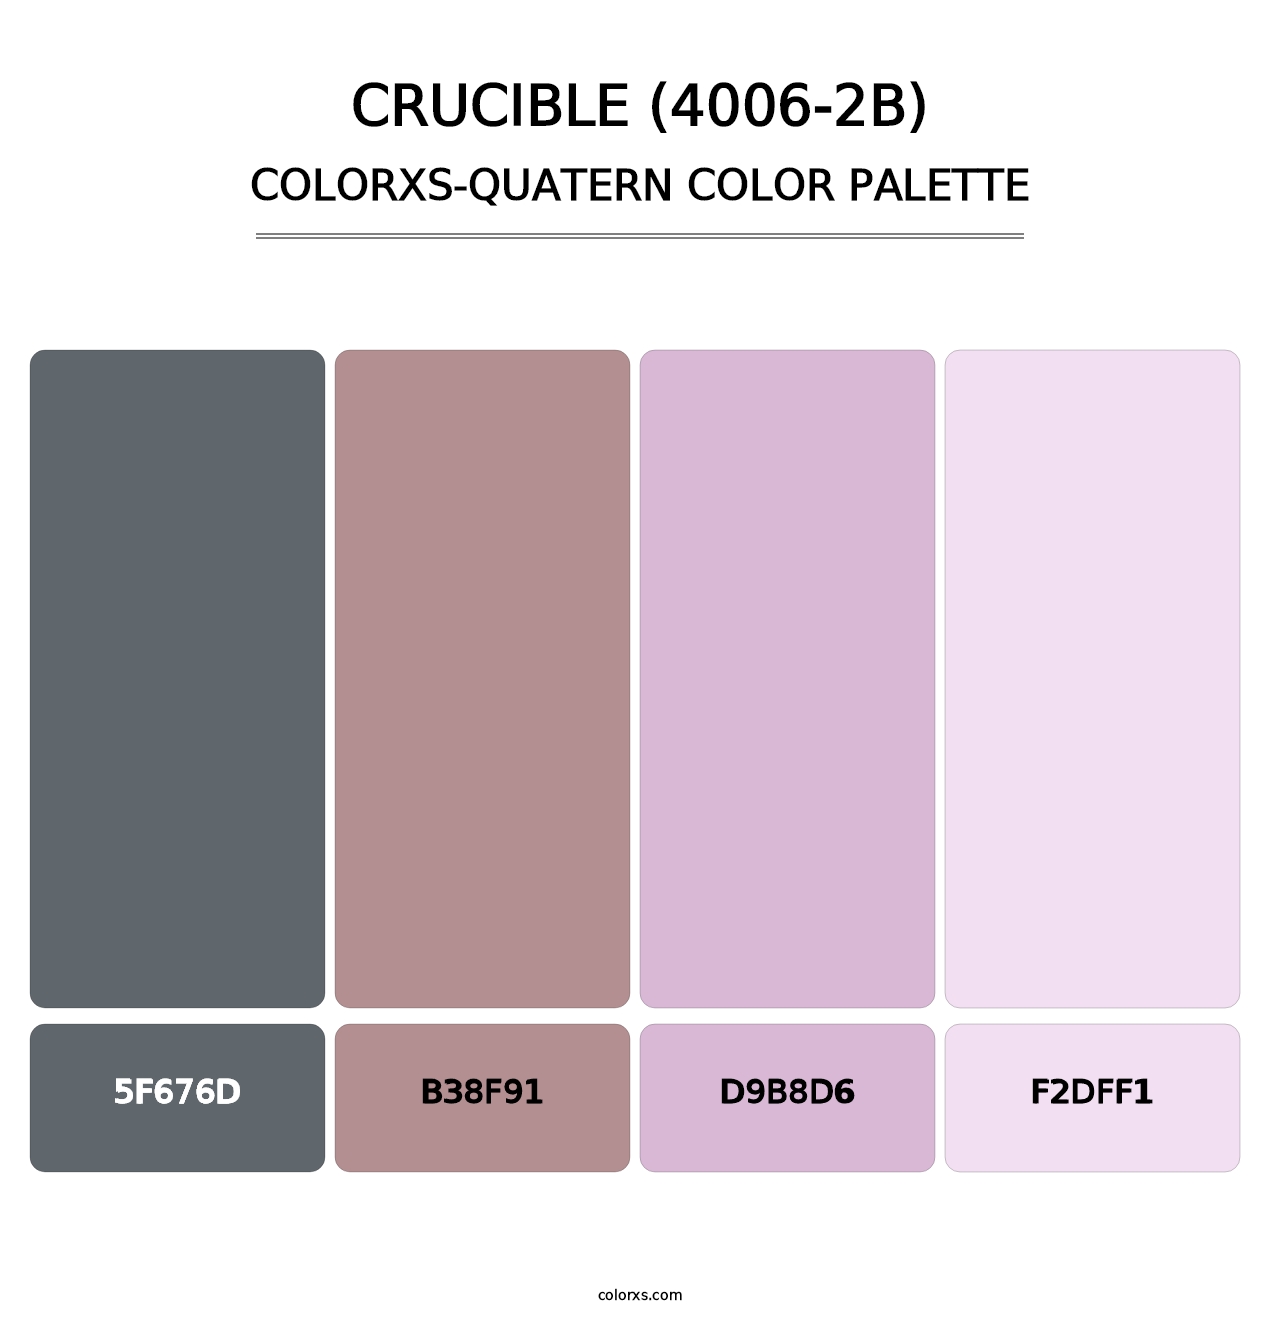 Crucible (4006-2B) - Colorxs Quatern Palette